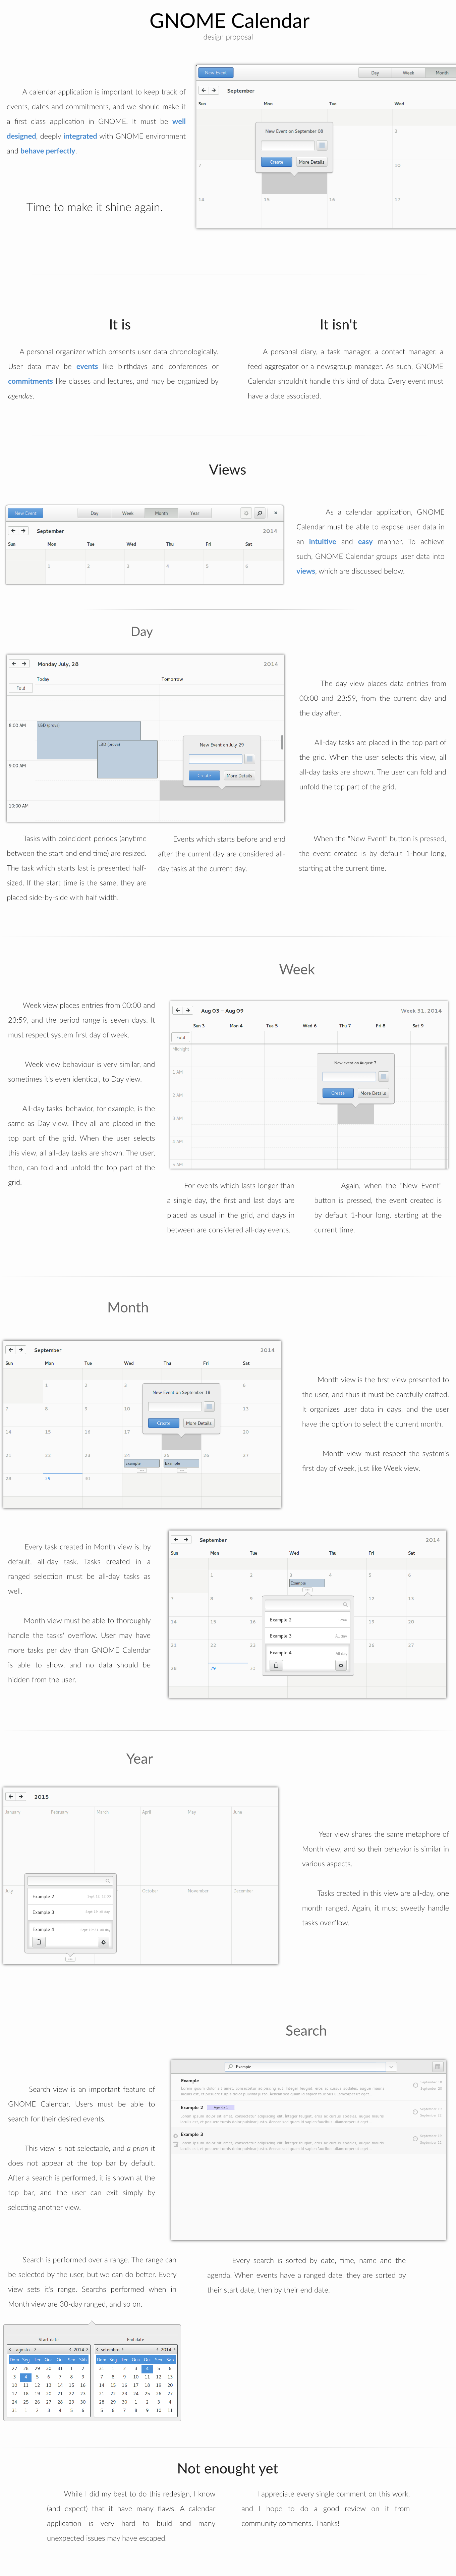 GNOME Calendar redesign